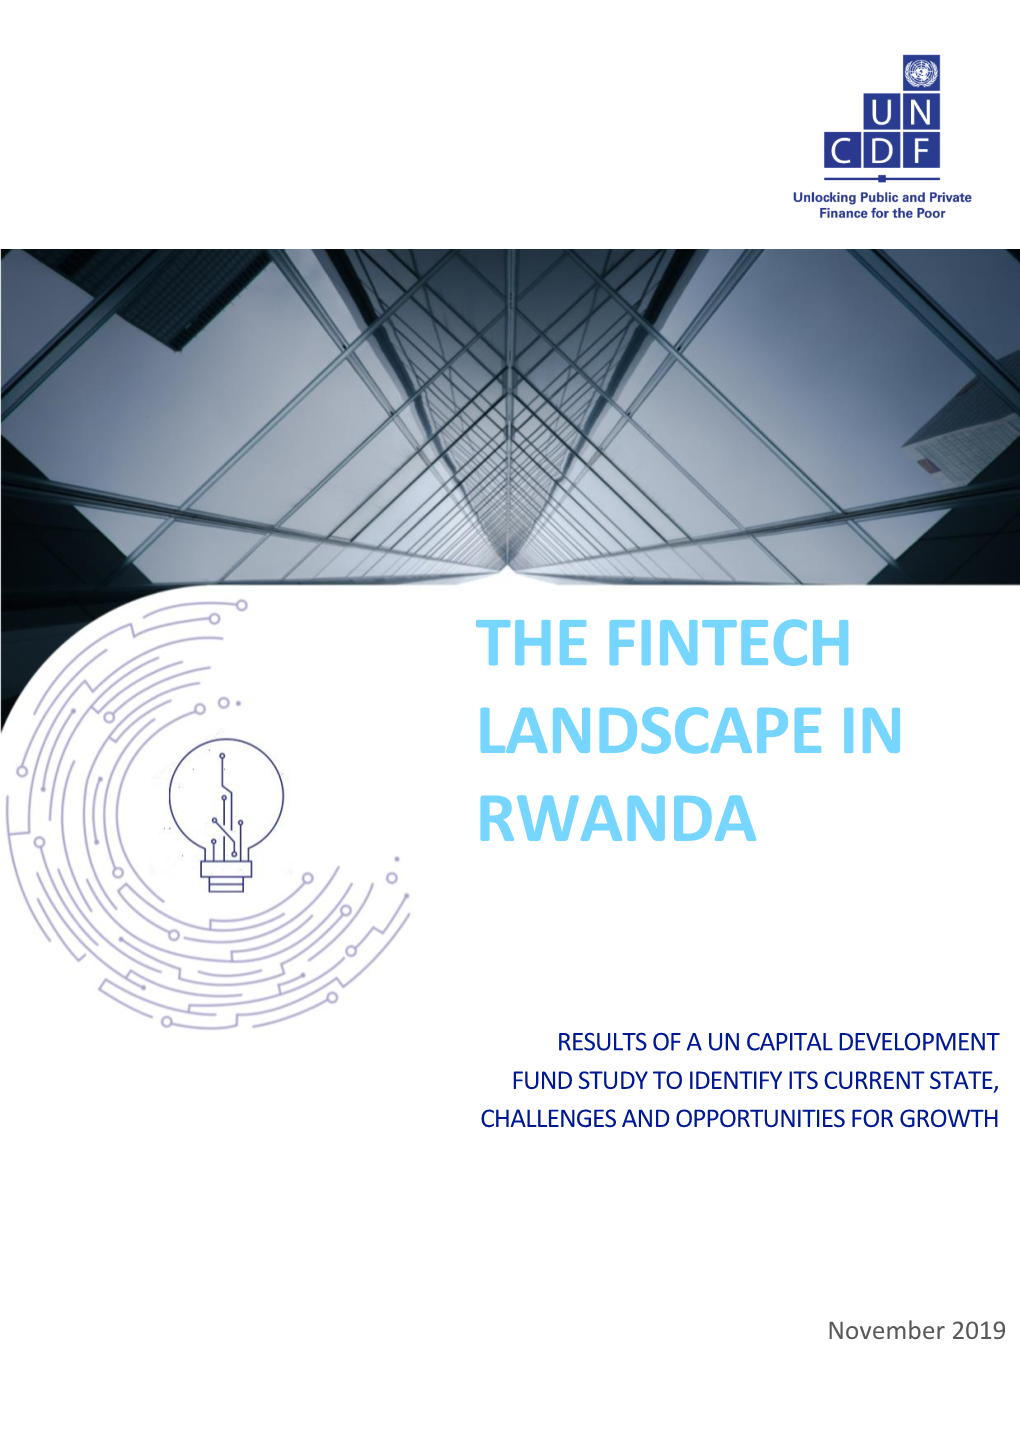 The Fintech Landscape in Rwanda